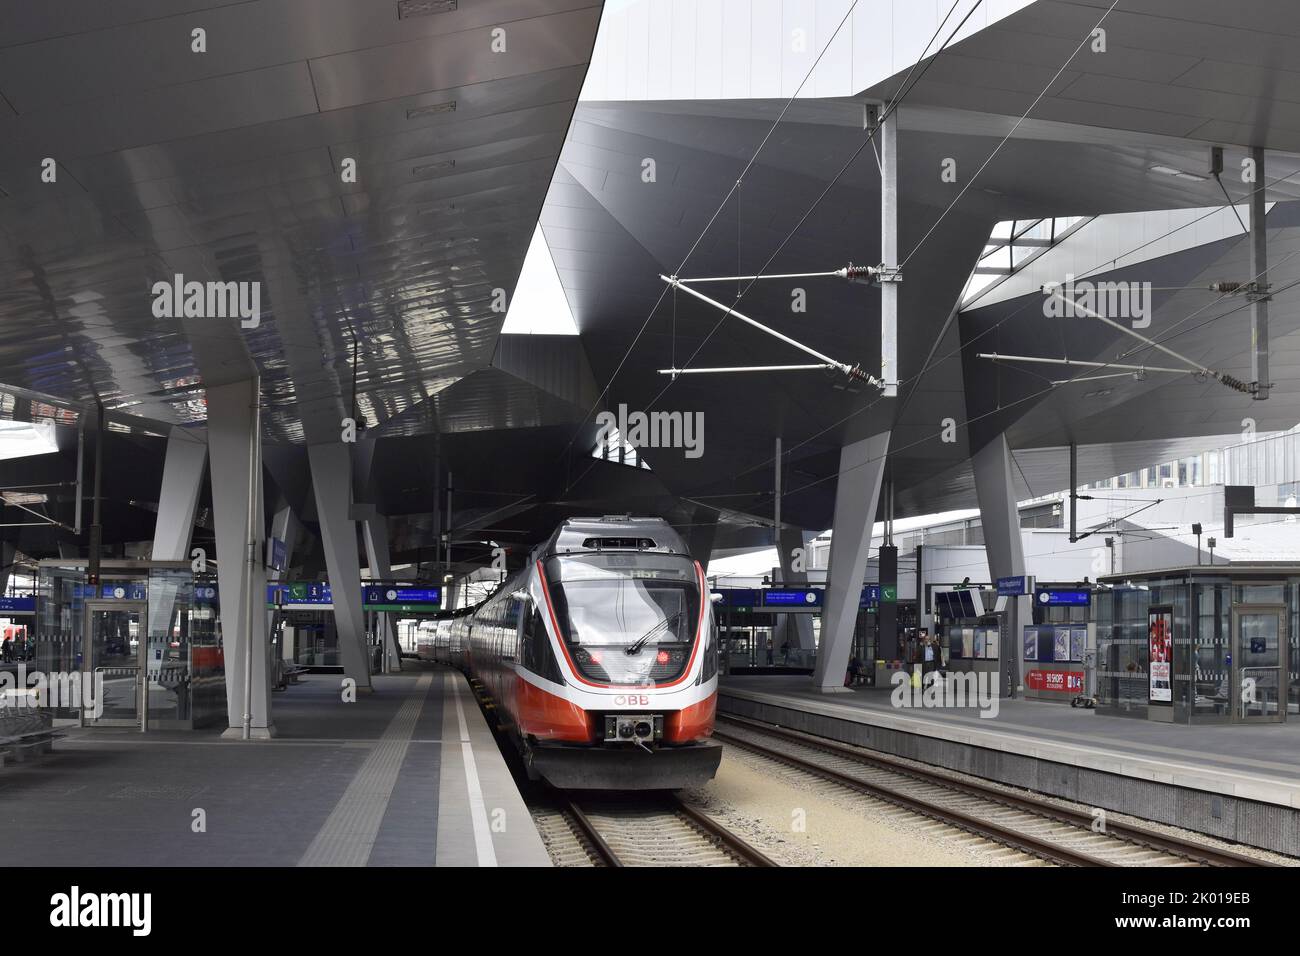 Train at platform, Wien Hauptbahnhof  - main railway station in Vienna Austria. Stock Photo